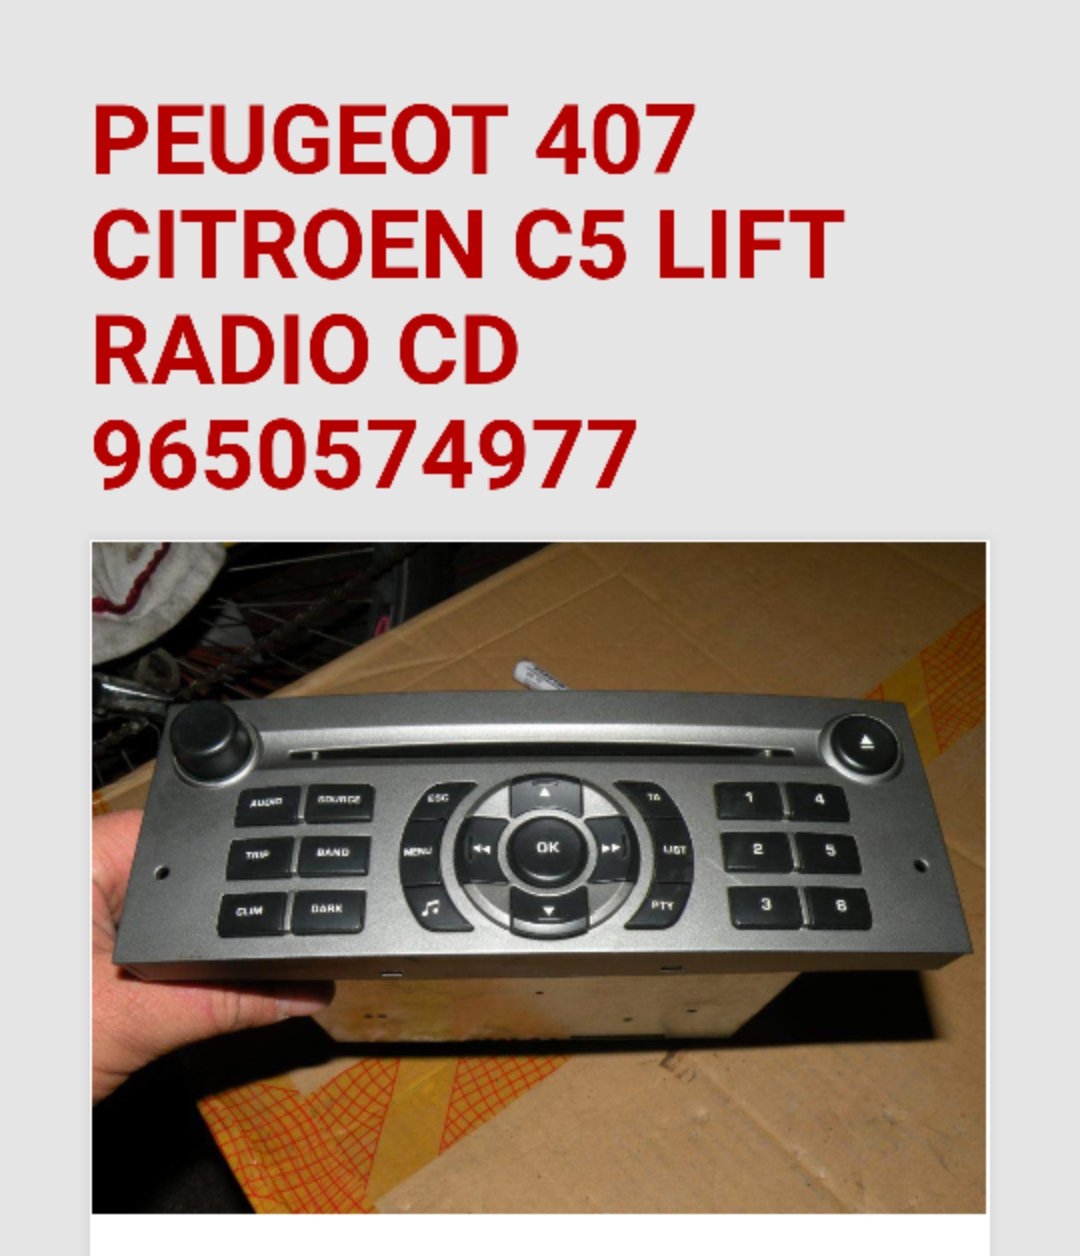 Aux W Radiu Z Peugeot 407 07R. - Jak Dorobic Aux W Tym Radiu?